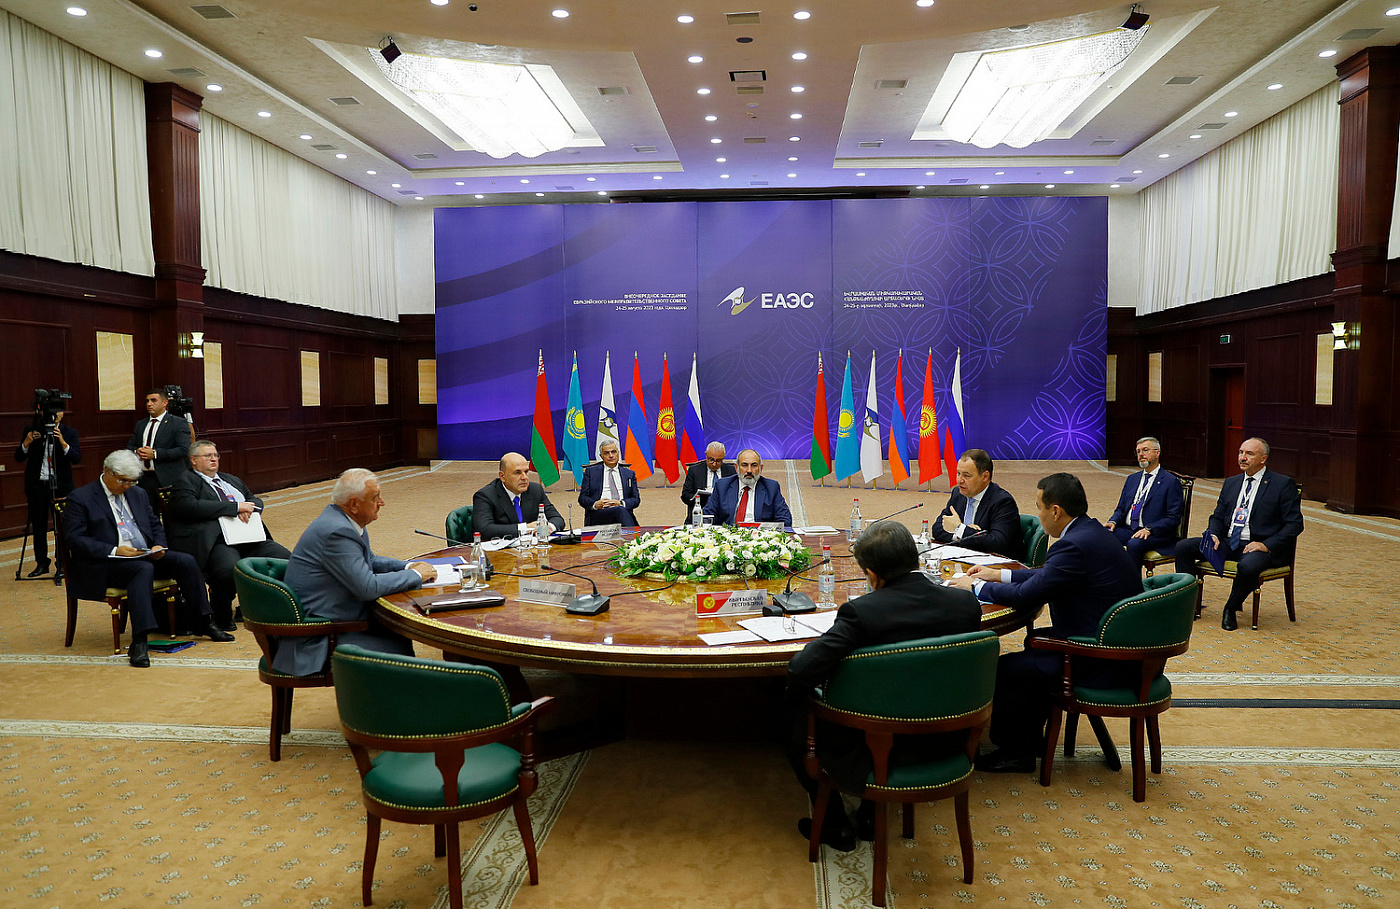 Следующее заседание Евразийского межправительственного совета состоится в Бишкеке